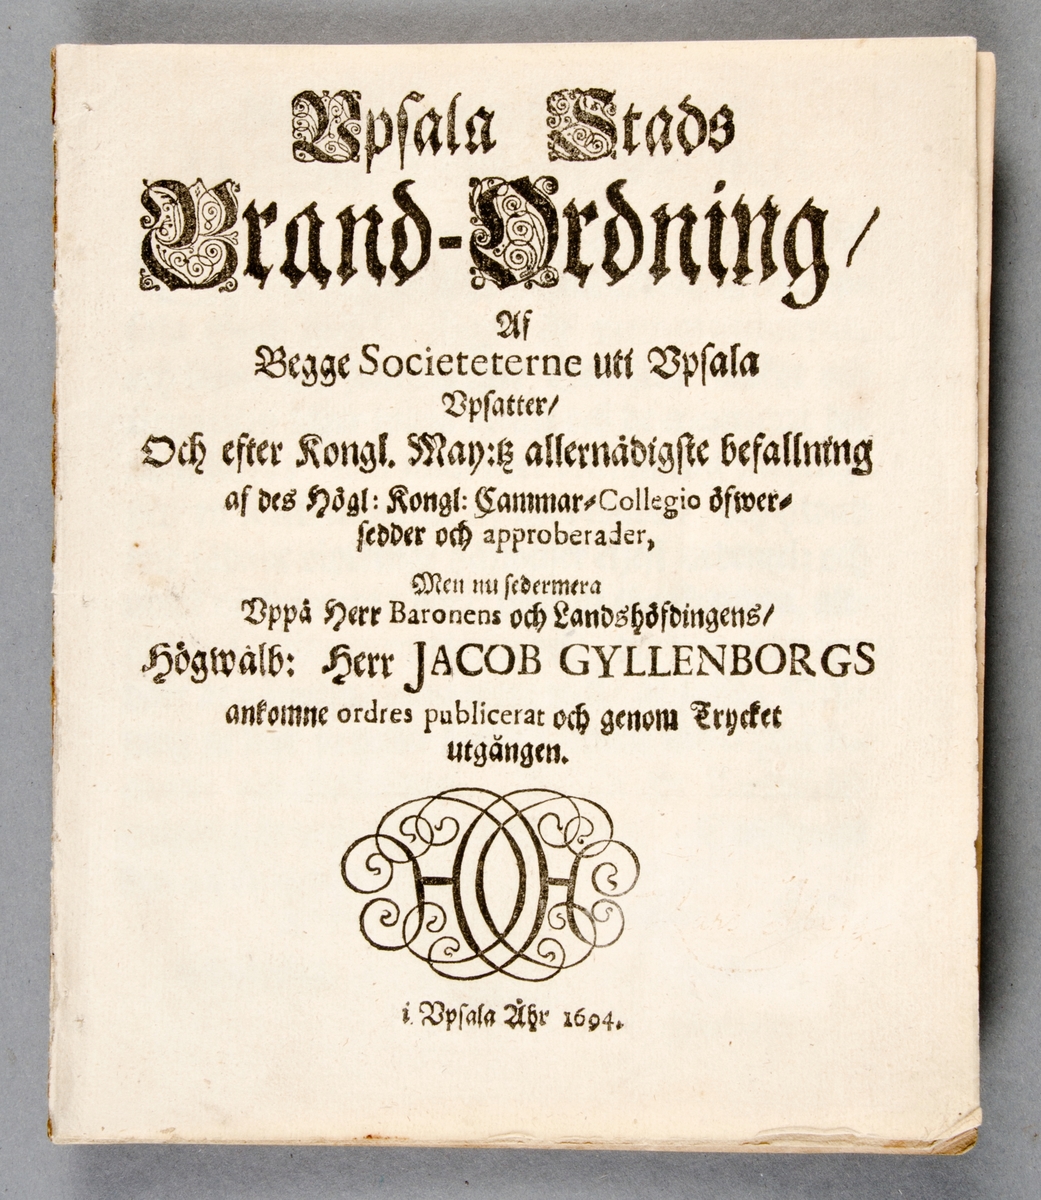 Brandordning för Uppsala stad i två exemplar; bok respektive häfte (utriven ur pärmar). Upsala Stads Brandordning, daterad 1692, tryckt 1694. 10 sidor. Boken har en senare inbindning i brunflammigt klotband.